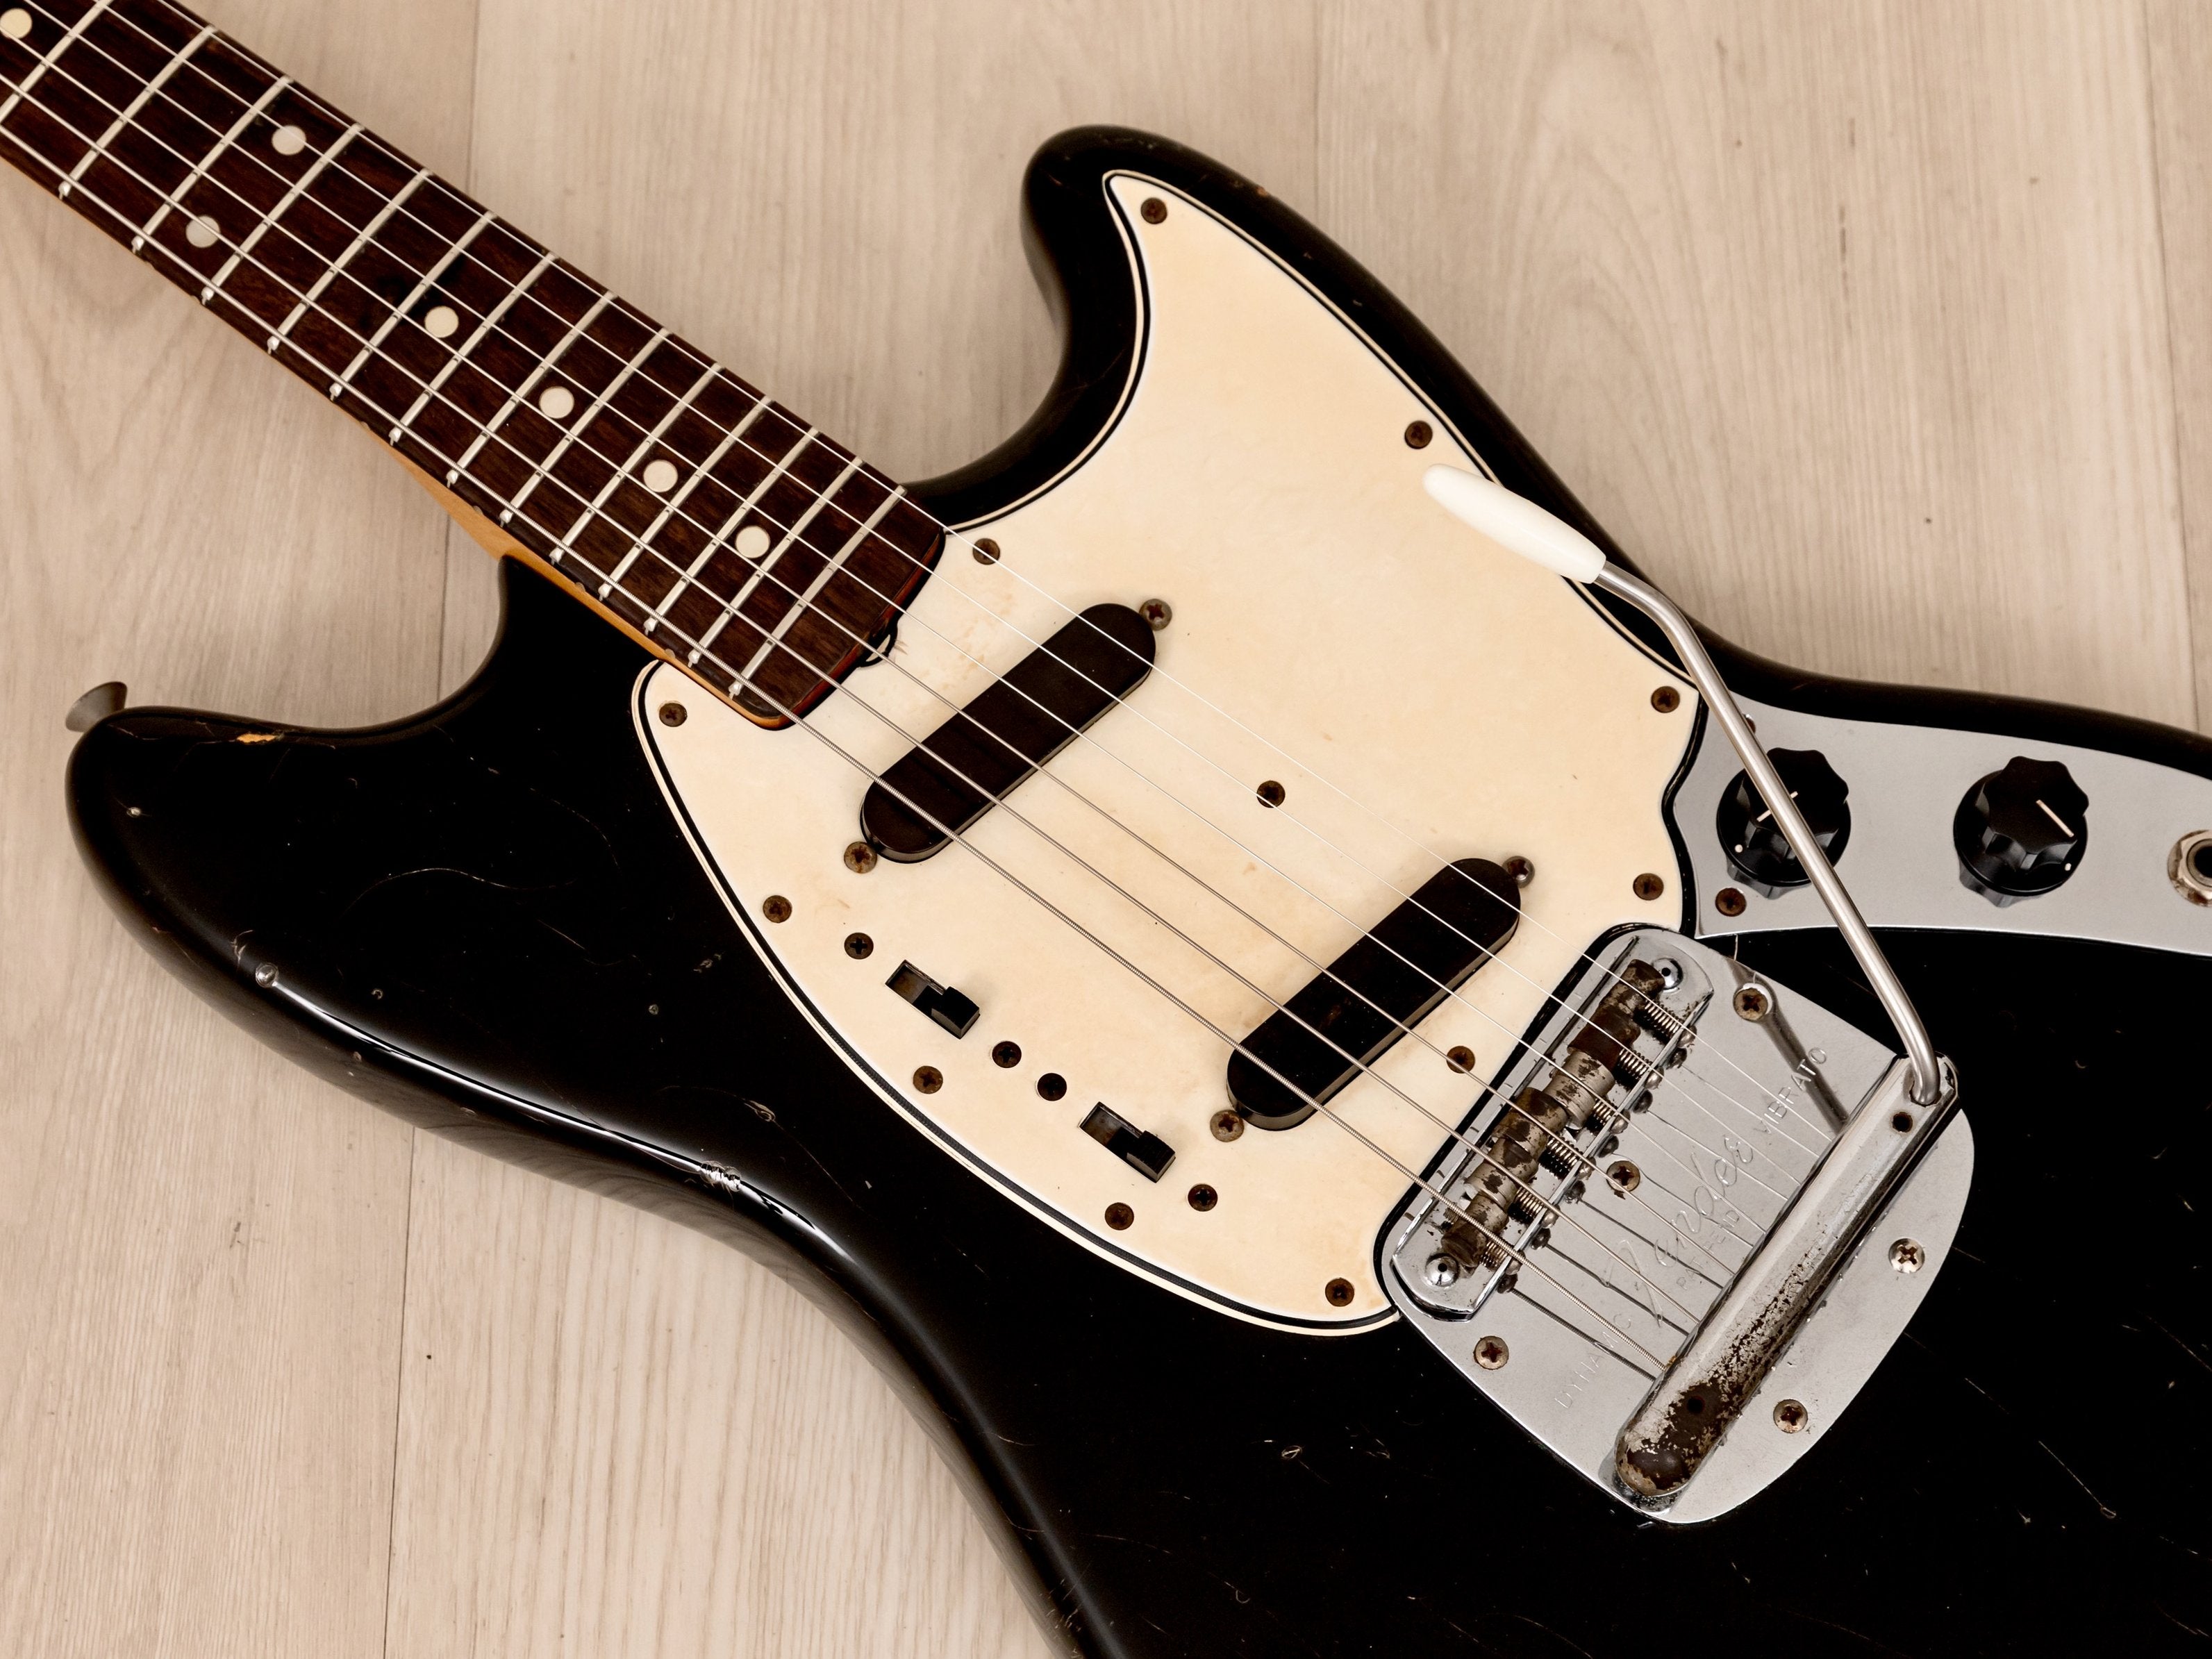 1965 Fender Mustang Vintage Offset Electric Guitar Black w/ Case